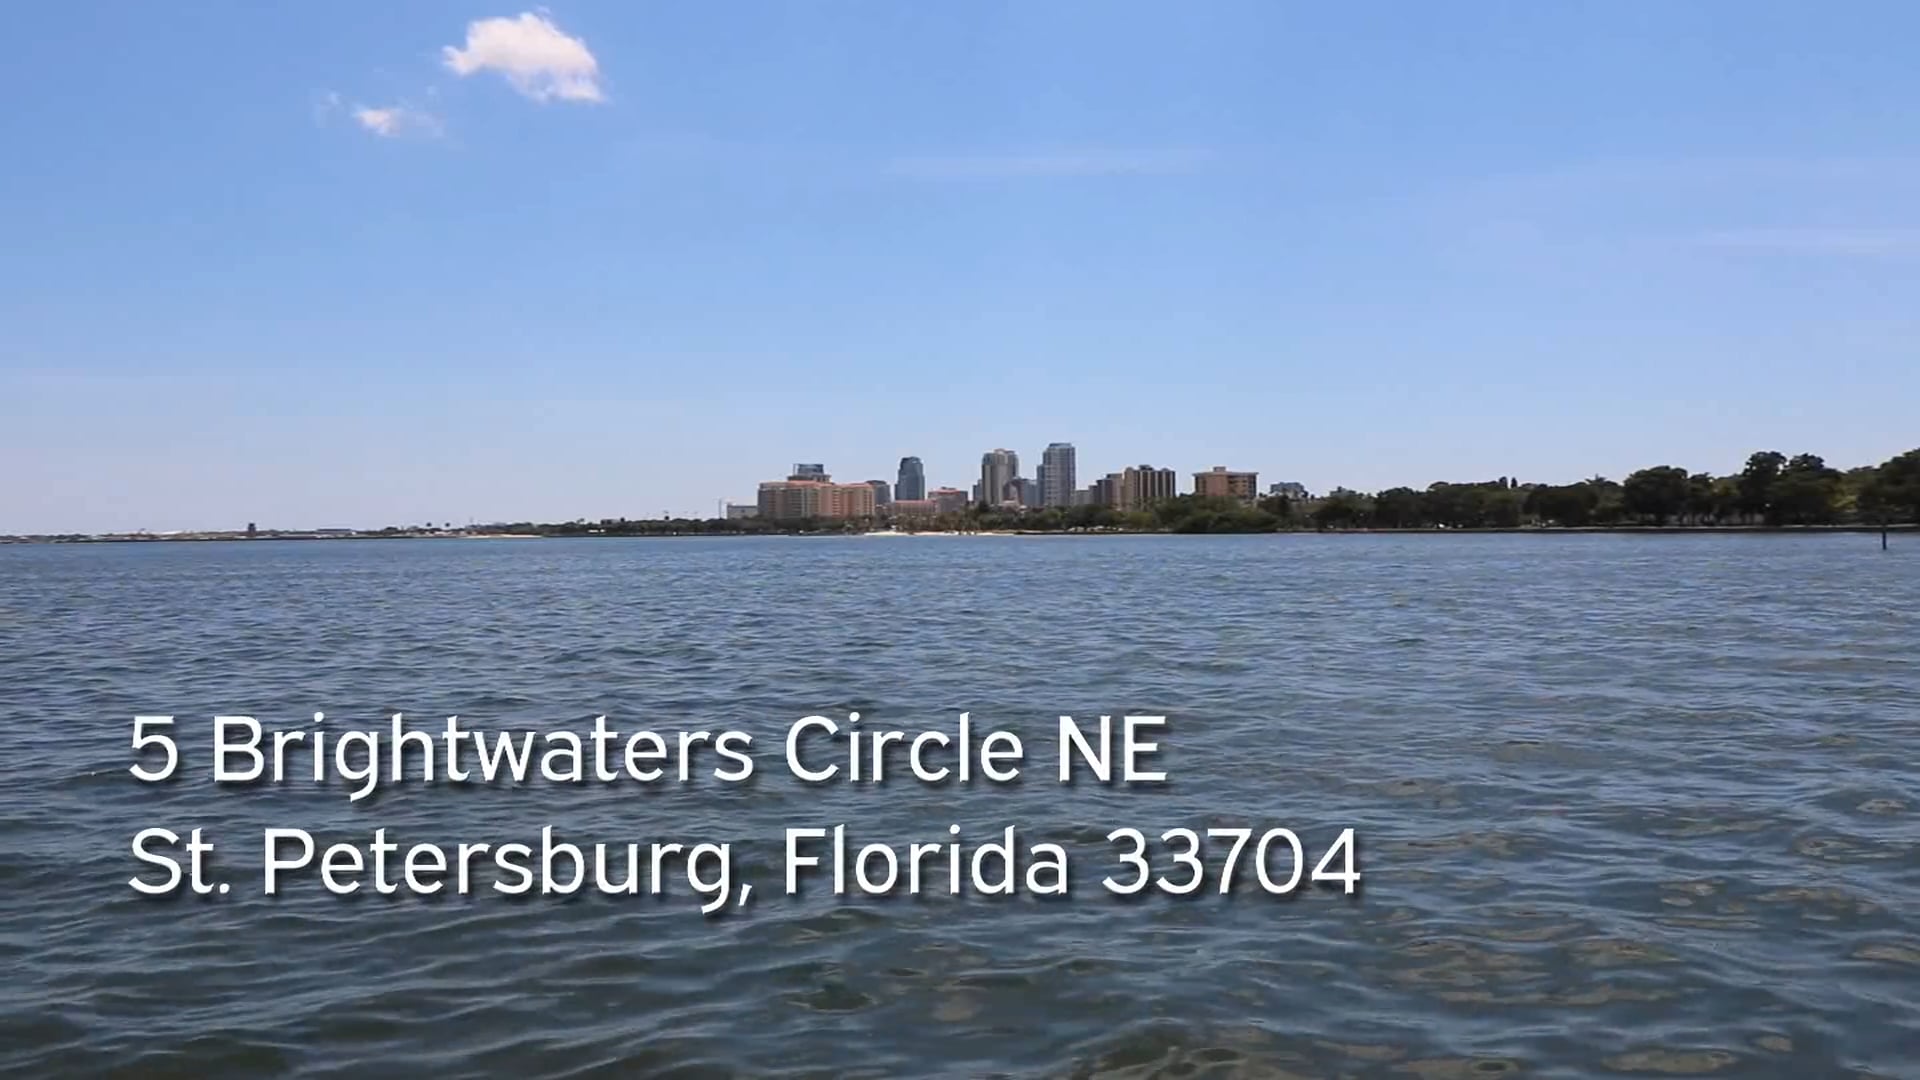 5 Brightwaters Circle NE - St. Petersburg, Florida 33704  - Unbranded (MLS Version)